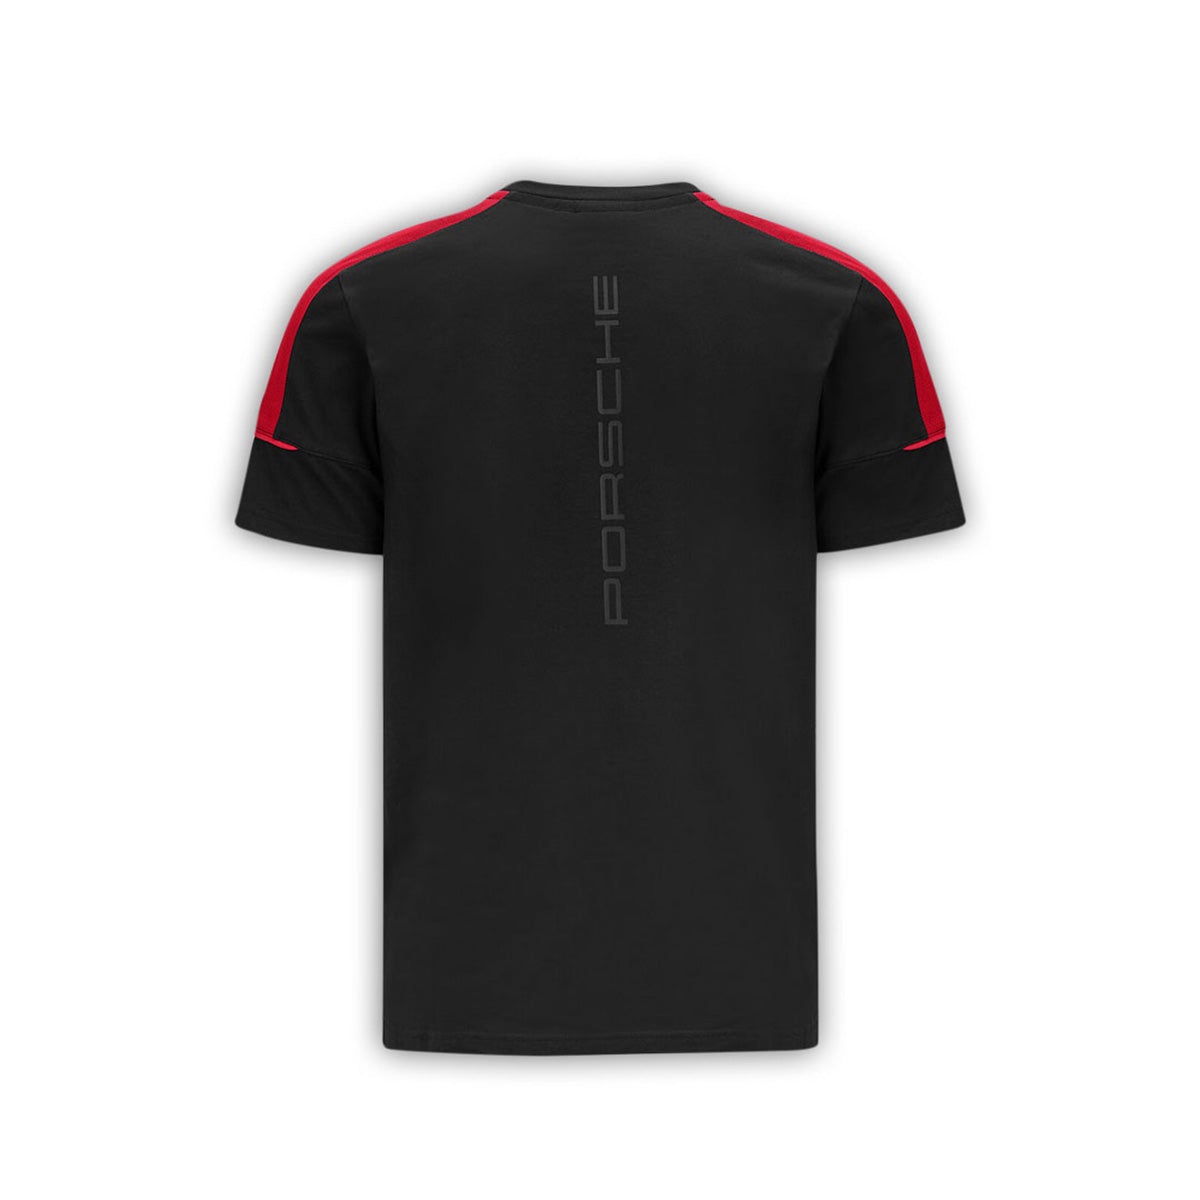 Fanwear T-Shirt - Porsche Motorsport - Fueler store